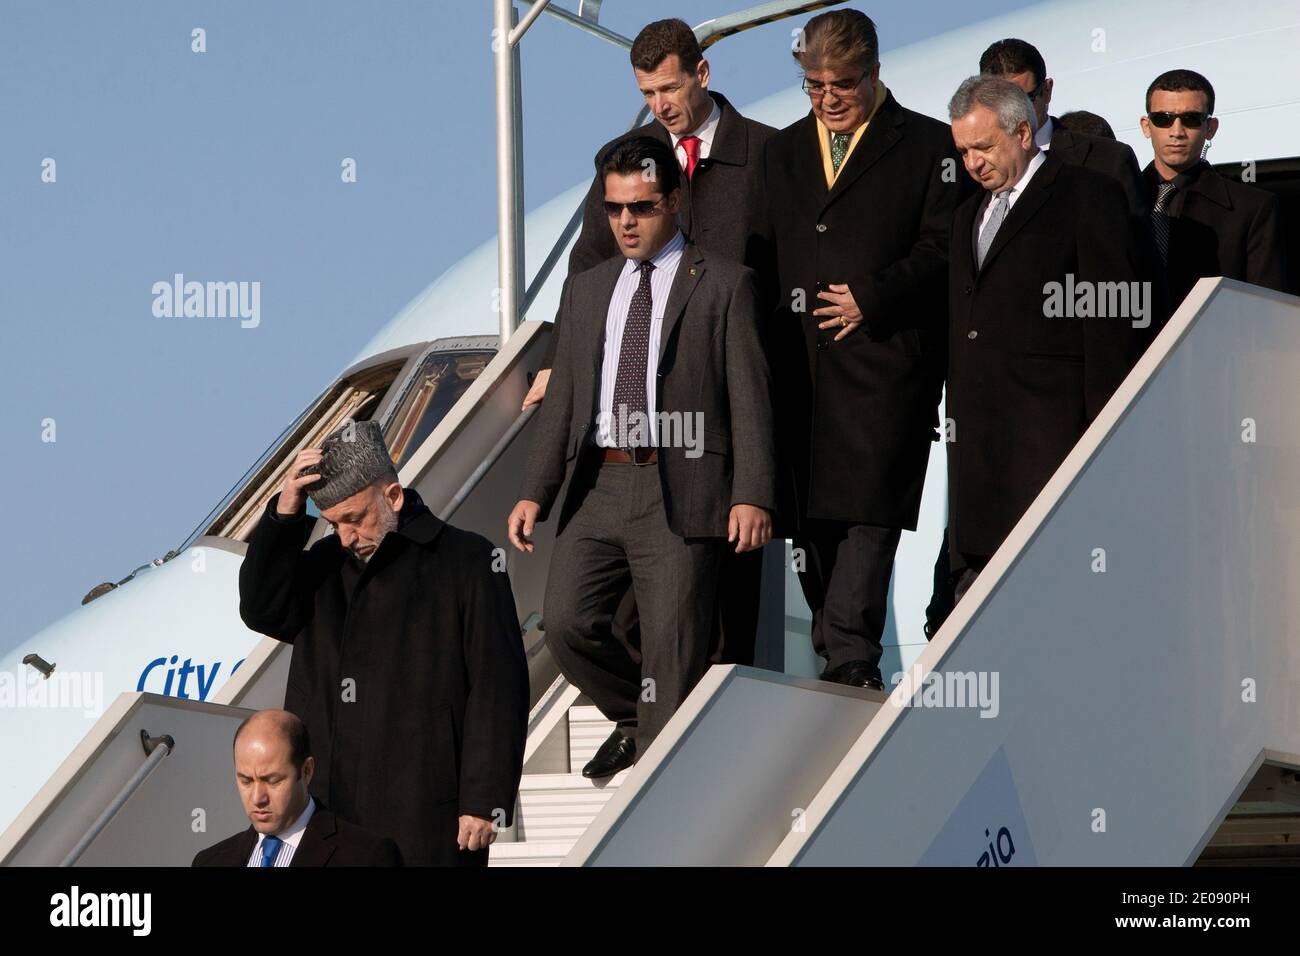 Le président afghan Hamid Karzaï arrive à l'aéroport d'Orly, en dehors de Paris, en France, le 27 janvier 2012. Karzaï effectue un voyage européen de cinq jours pour signer des accords de partenariat stratégique à long terme visant à renforcer le soutien à la reconstruction et au développement de l'Afghanistan. Photo de Stephane Lemouton/ABACAPRESS.COM Banque D'Images